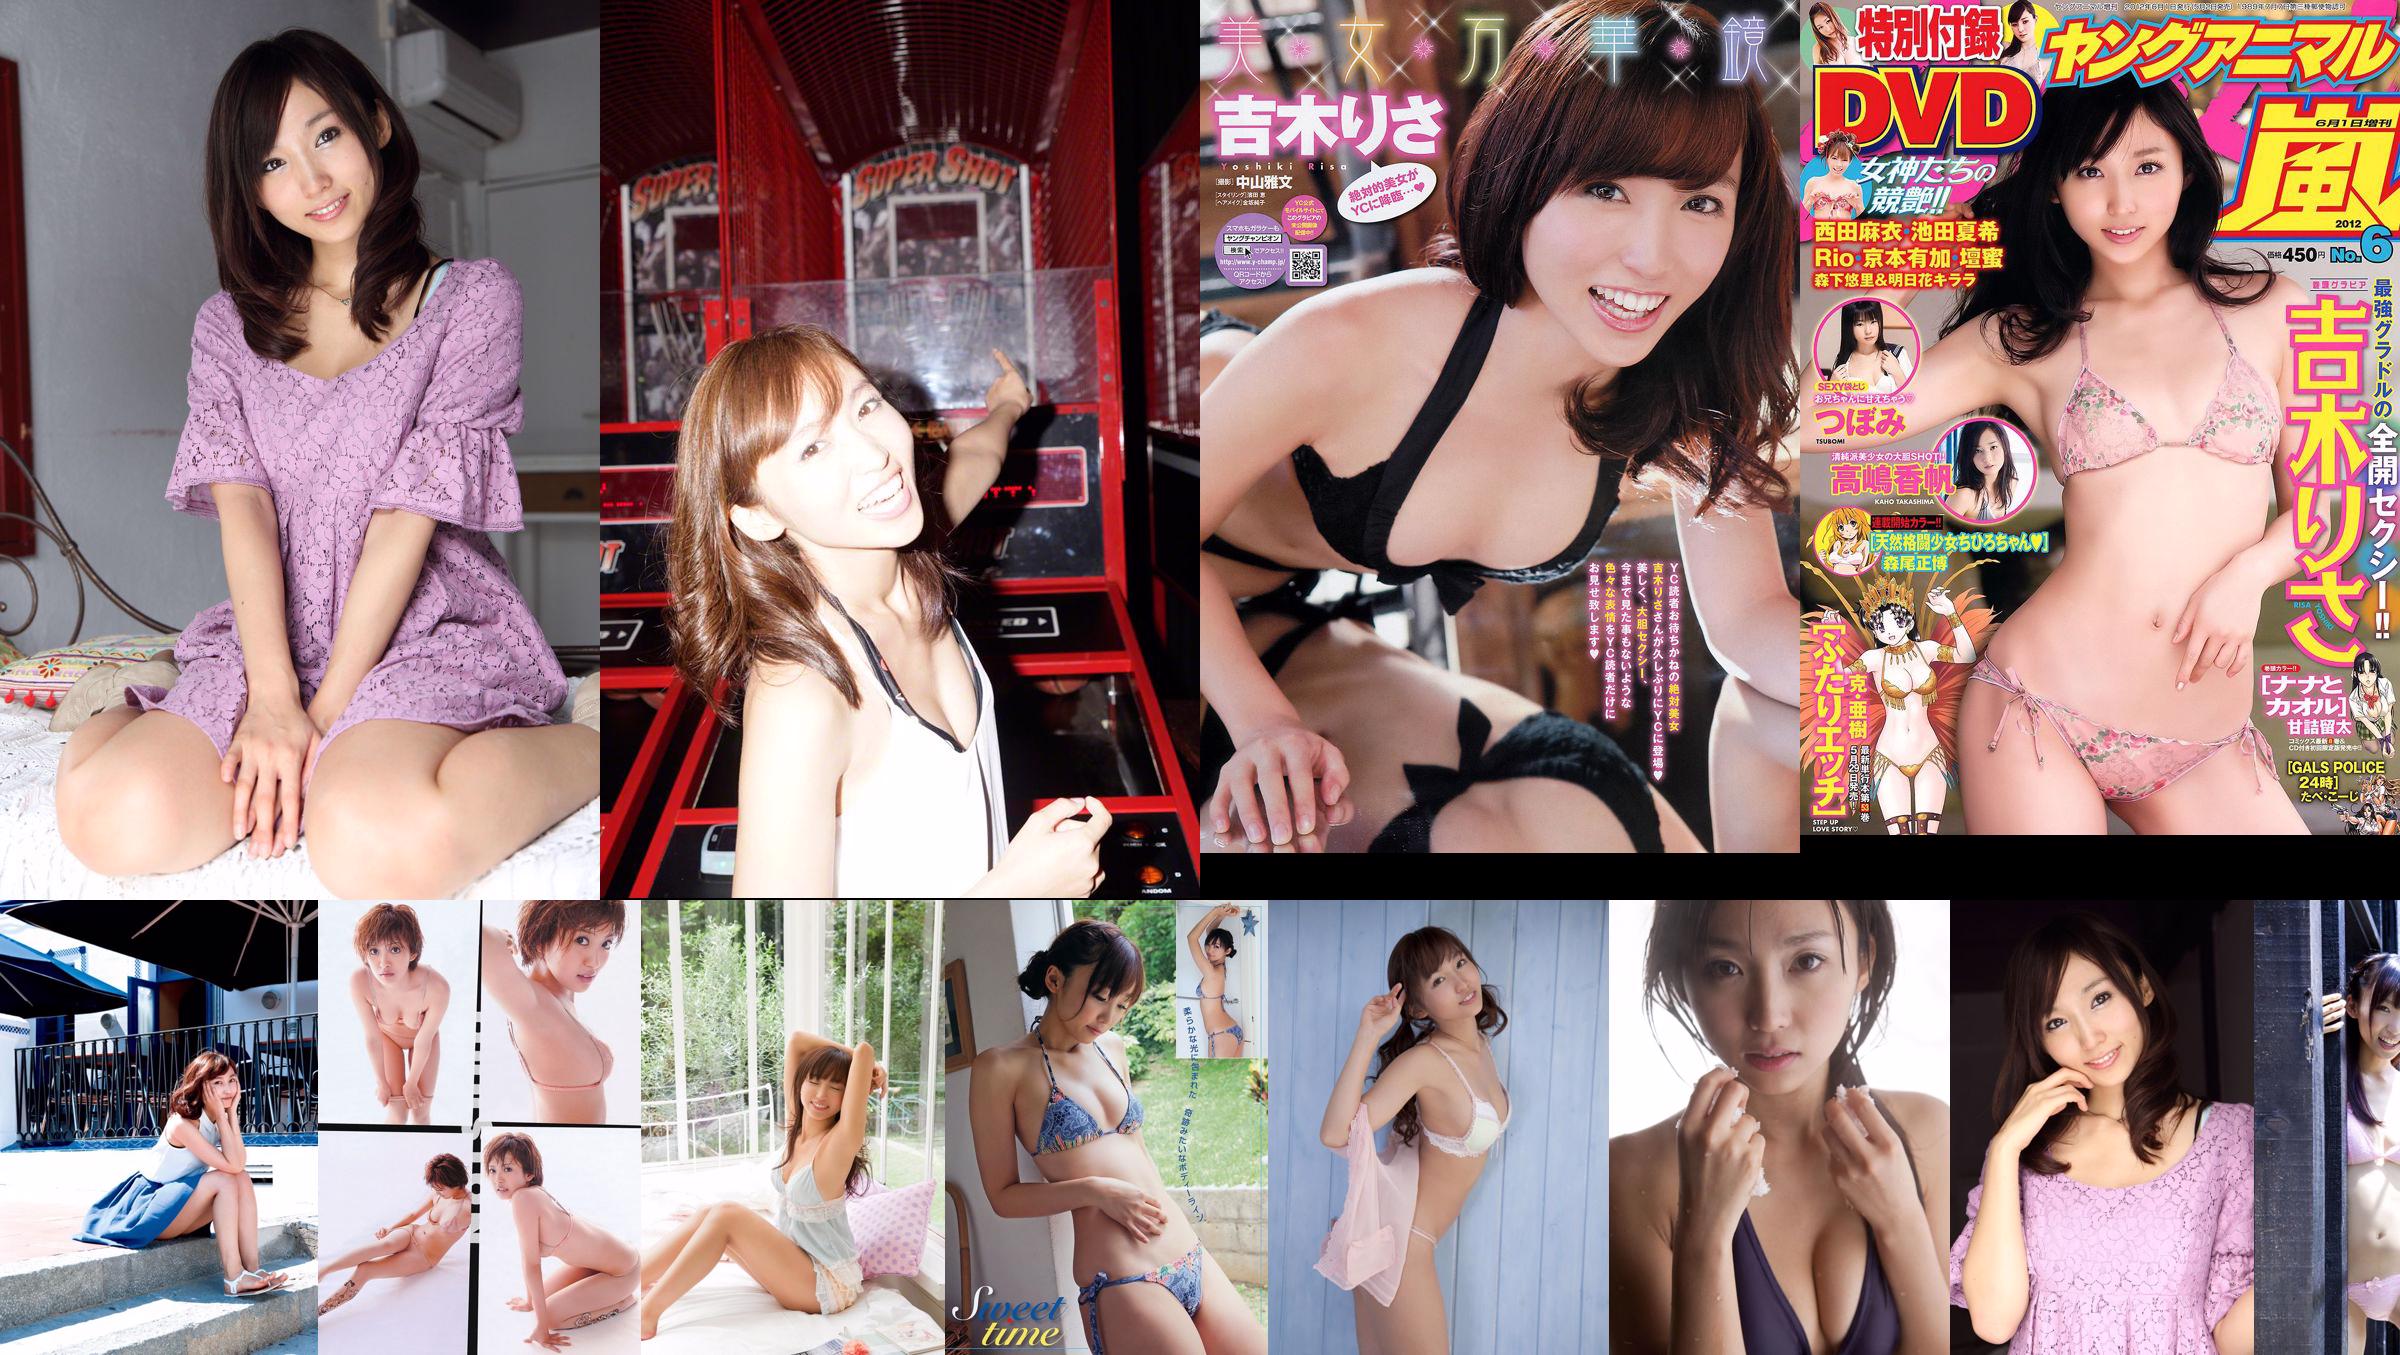 吉 木 り さ "TUYỆT VỜI" [Sabra.net] Cover Girl No.13ceff Trang 1